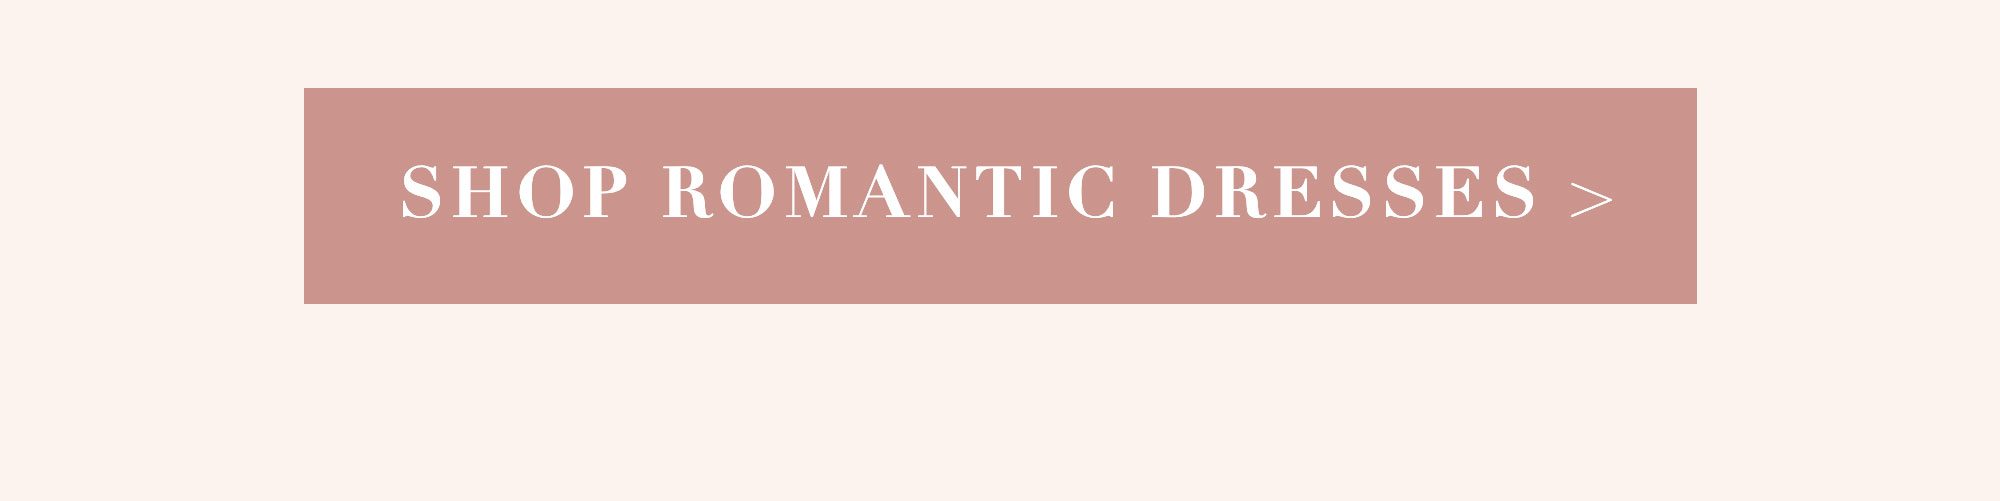 shop romantic dresses